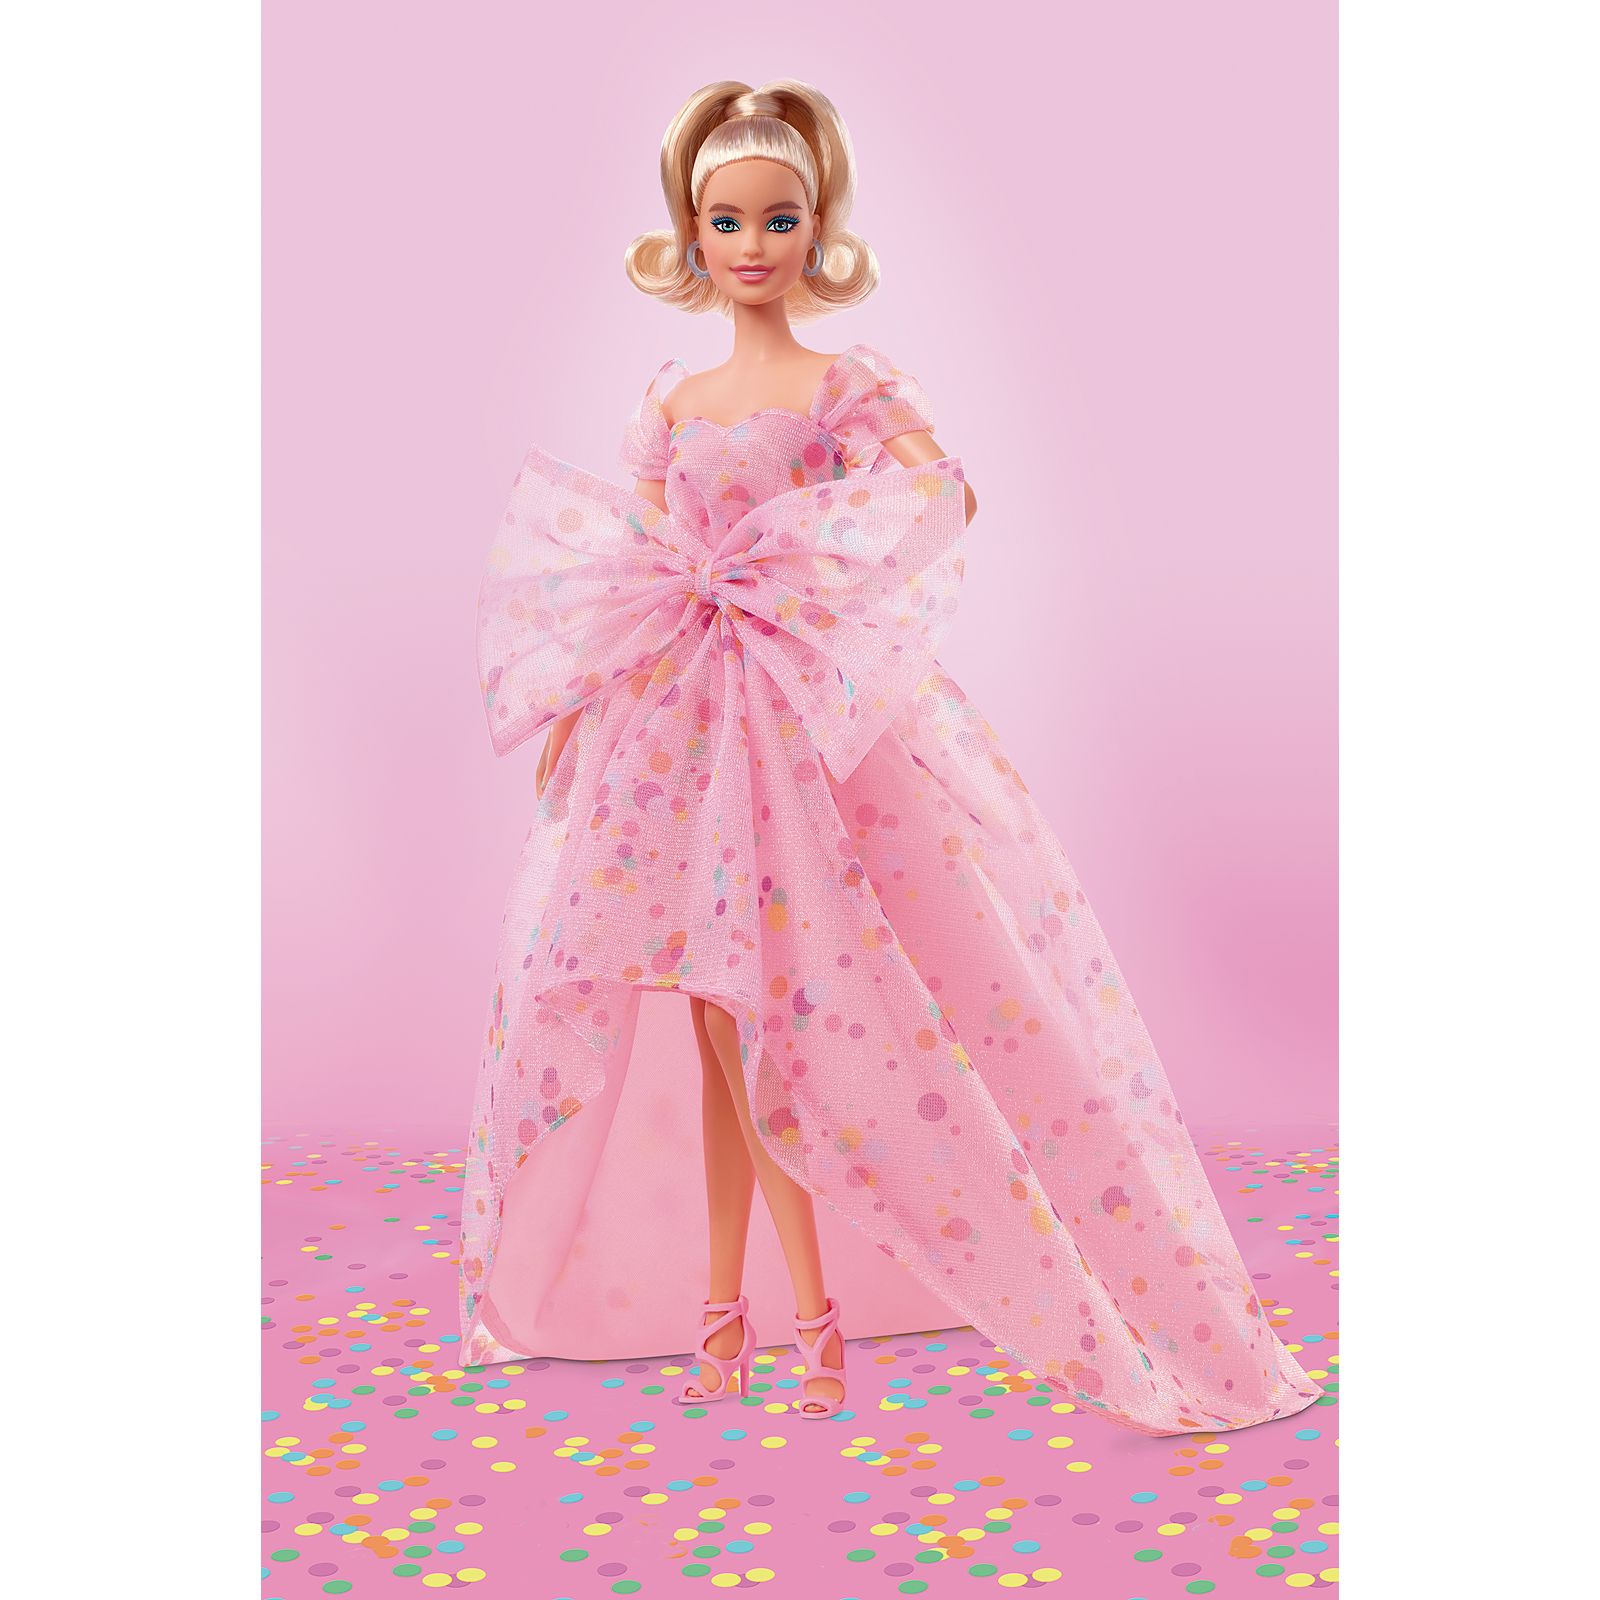 gebouw Wens Sobriquette Barbie Birthday Wishes 2022 doll - YouLoveIt.com